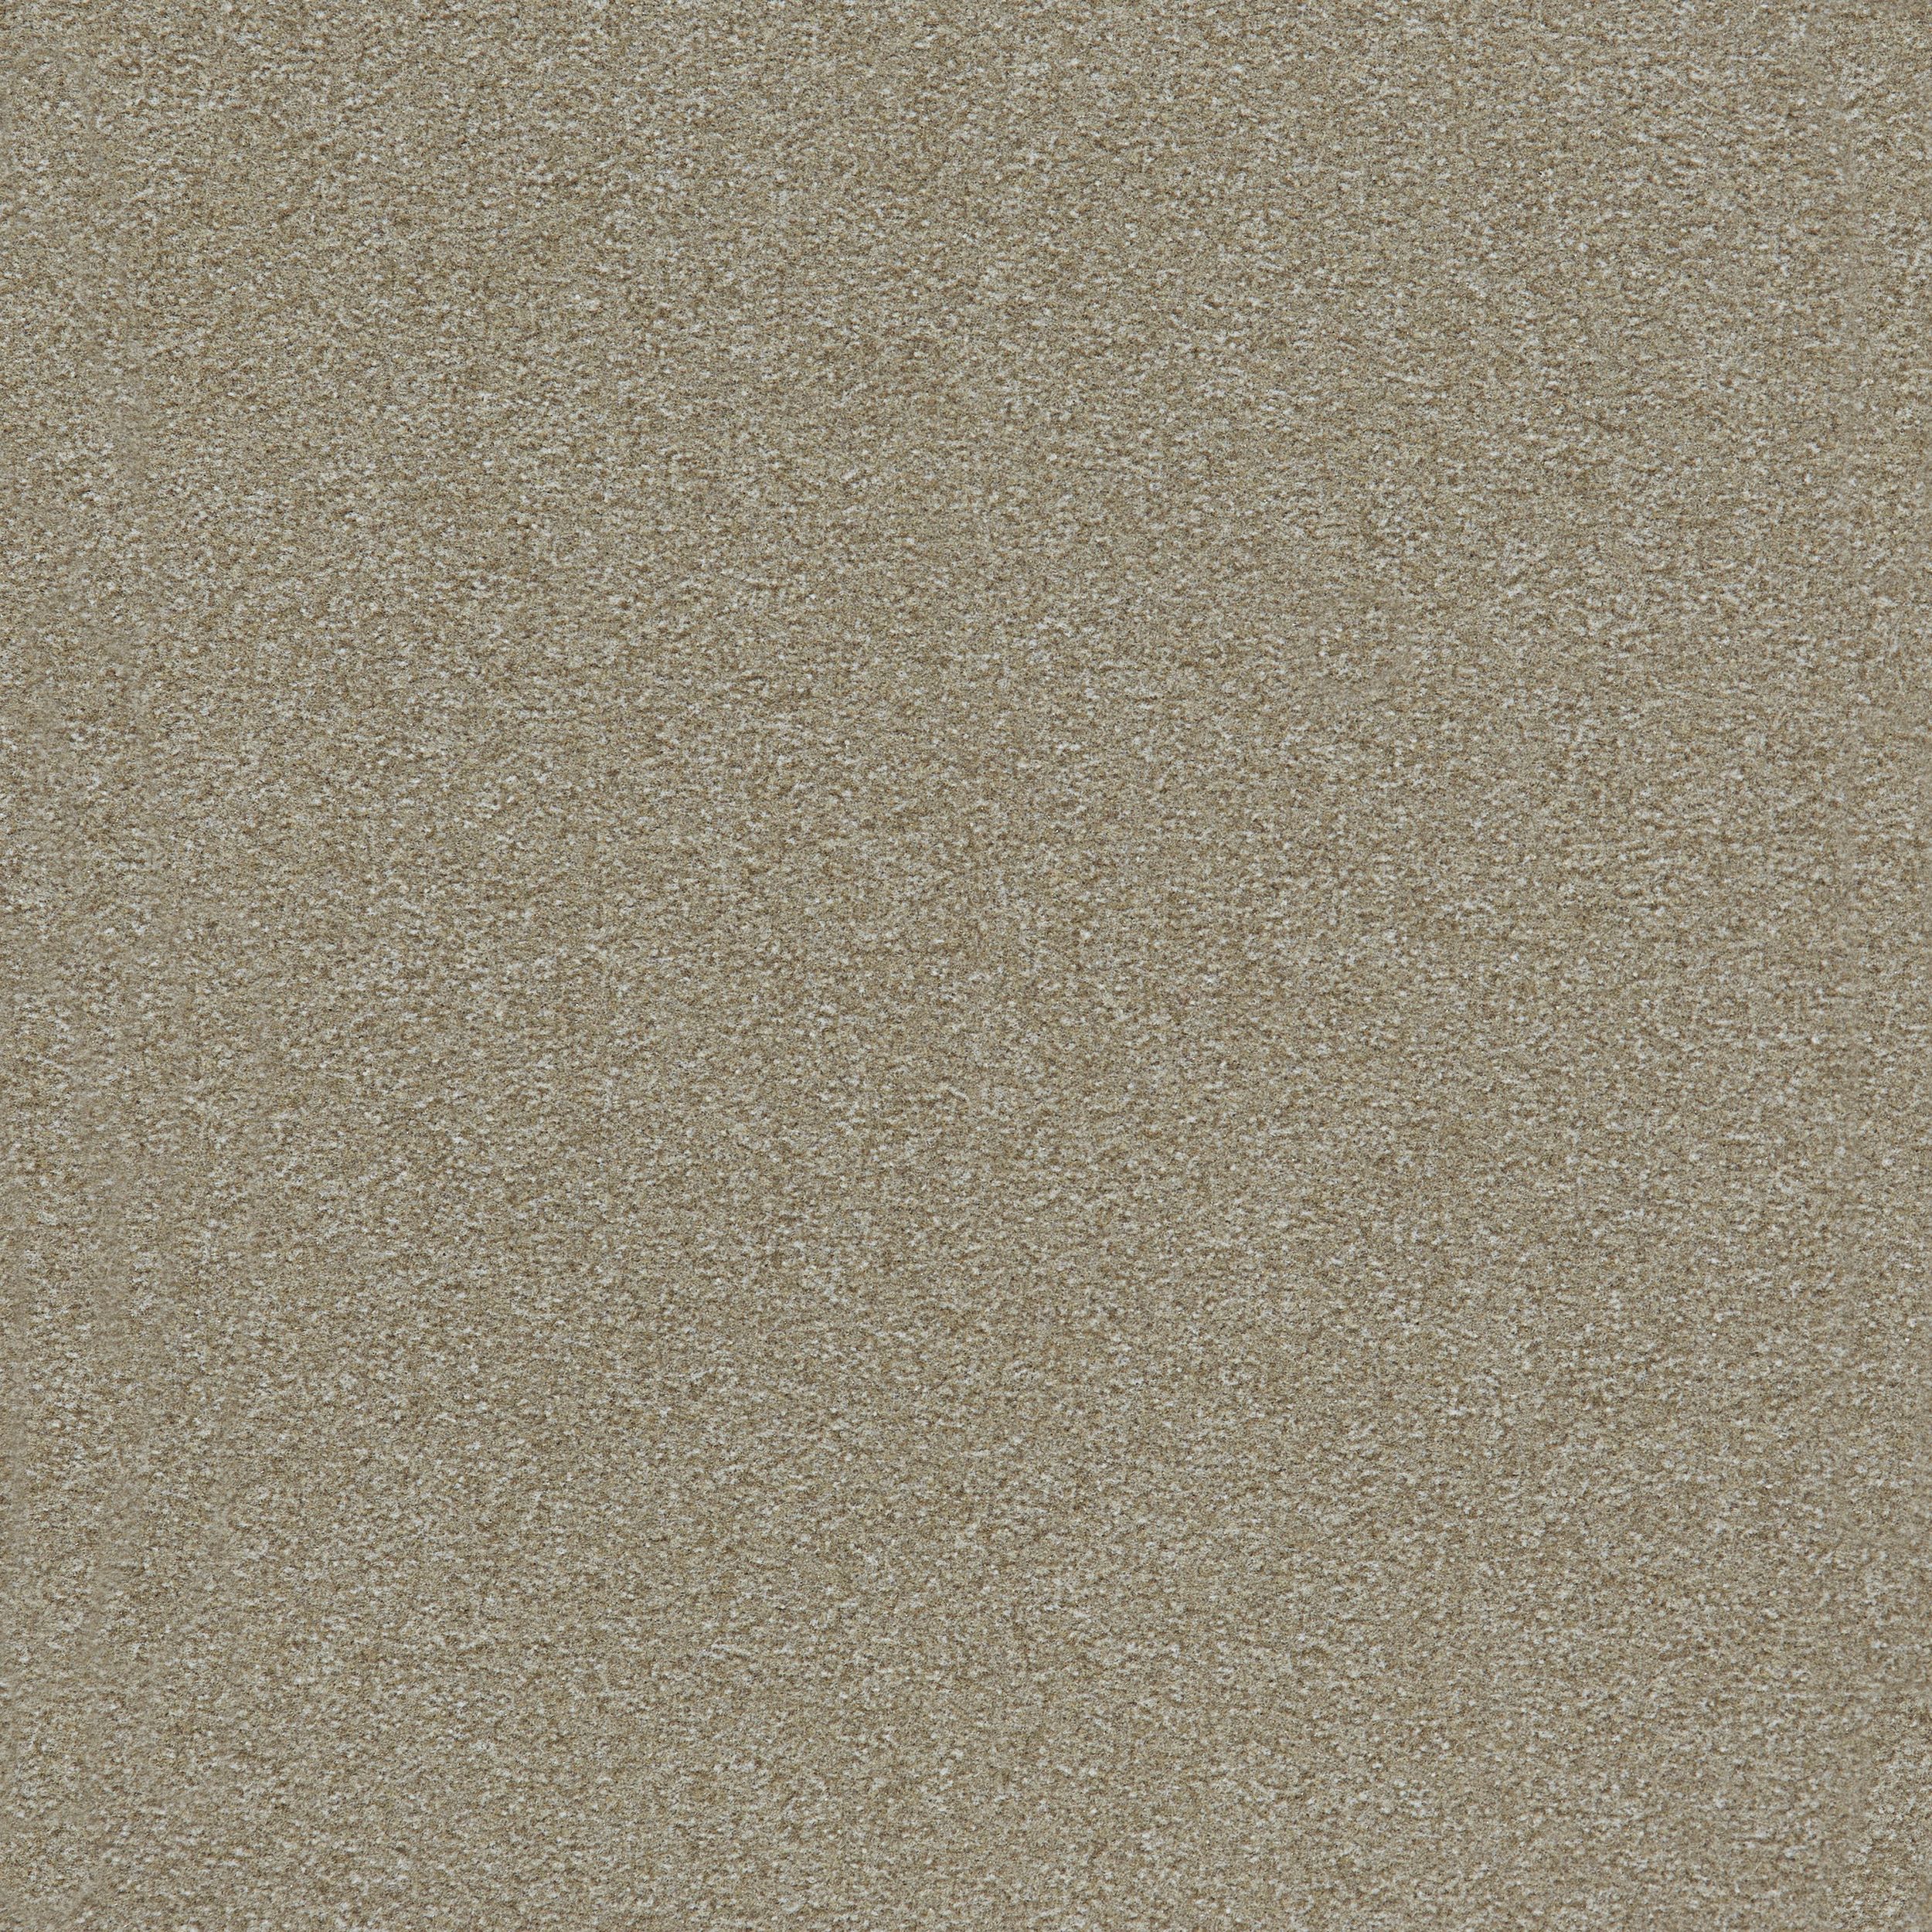 Heuga 725 Carpet Tile In Oyster número de imagen 8